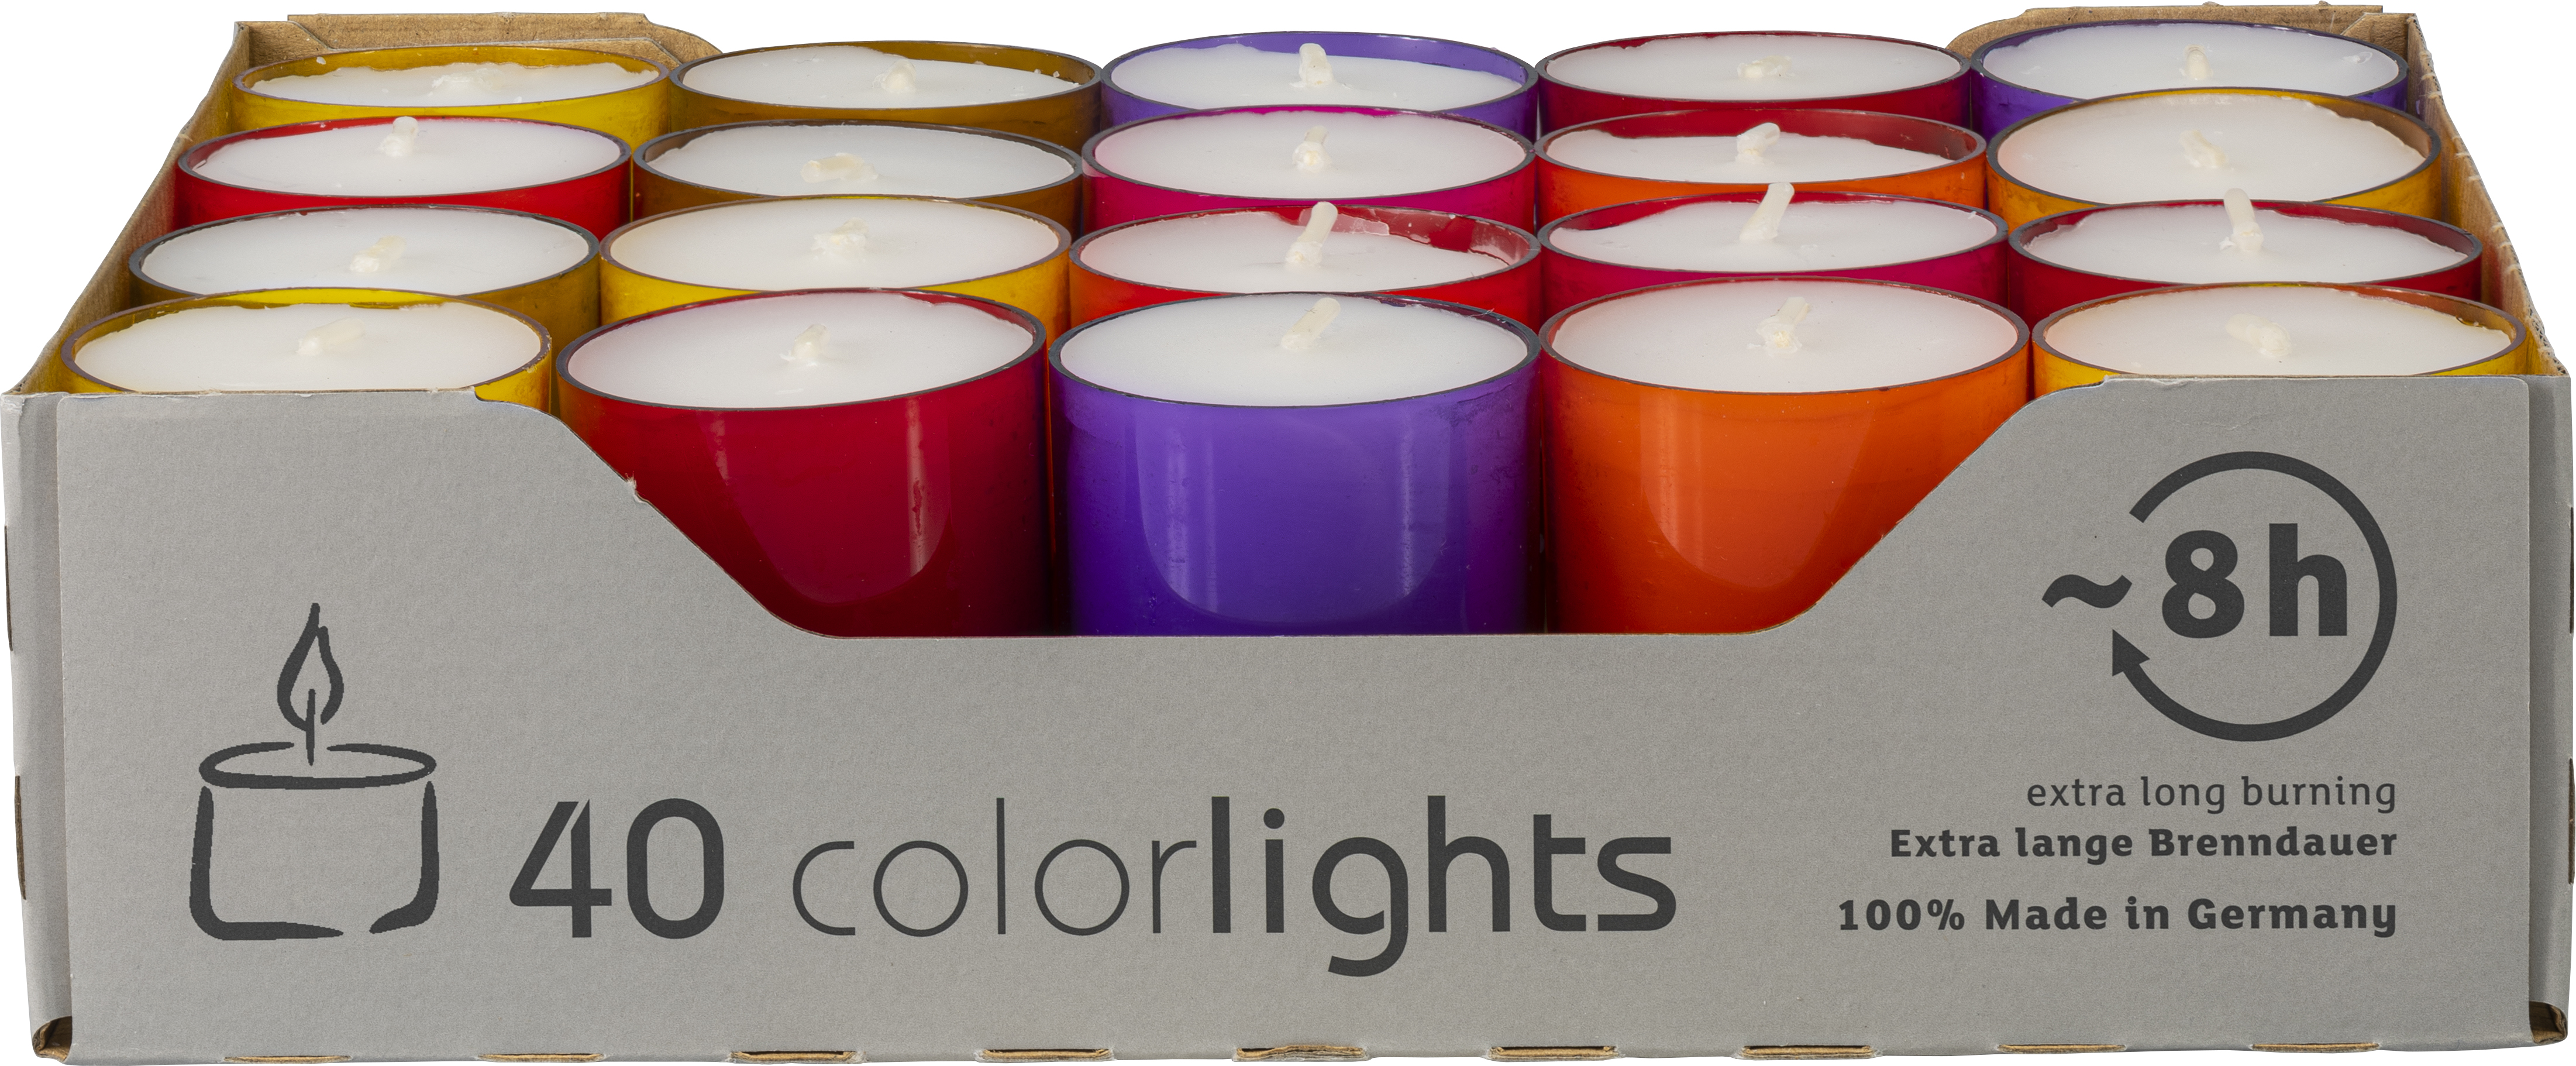 Teelichter colorlights Winterfarben von Wenzel - 40 Stück - 8 h 